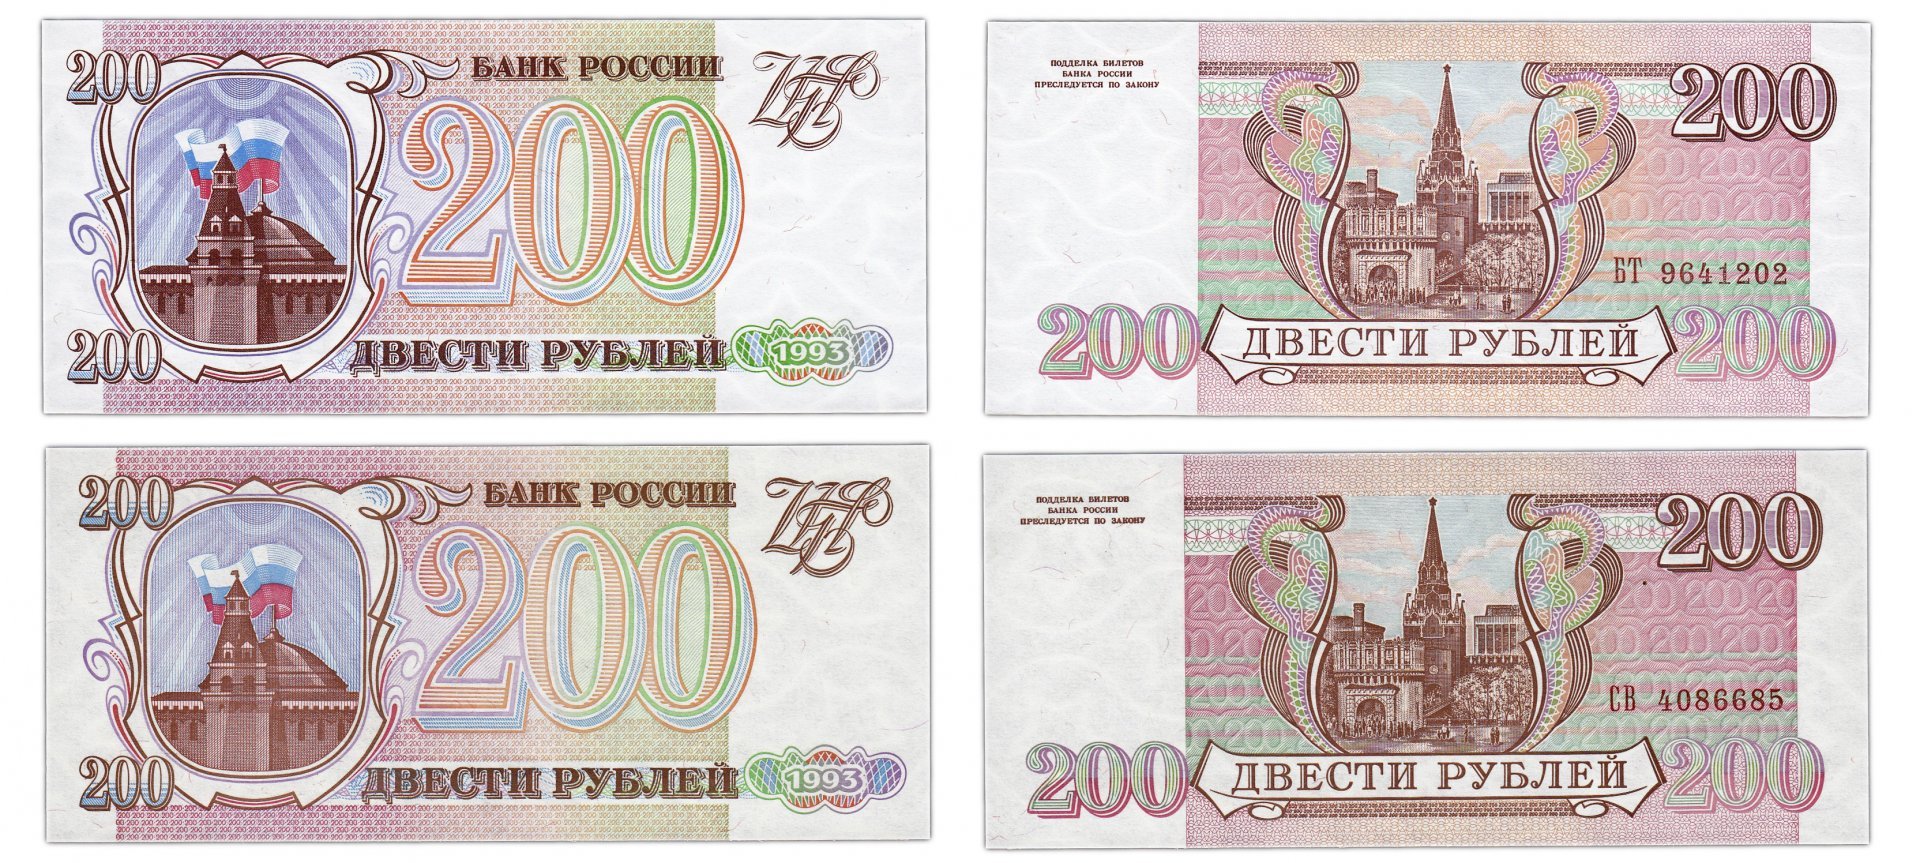 Игры до 200 рублей